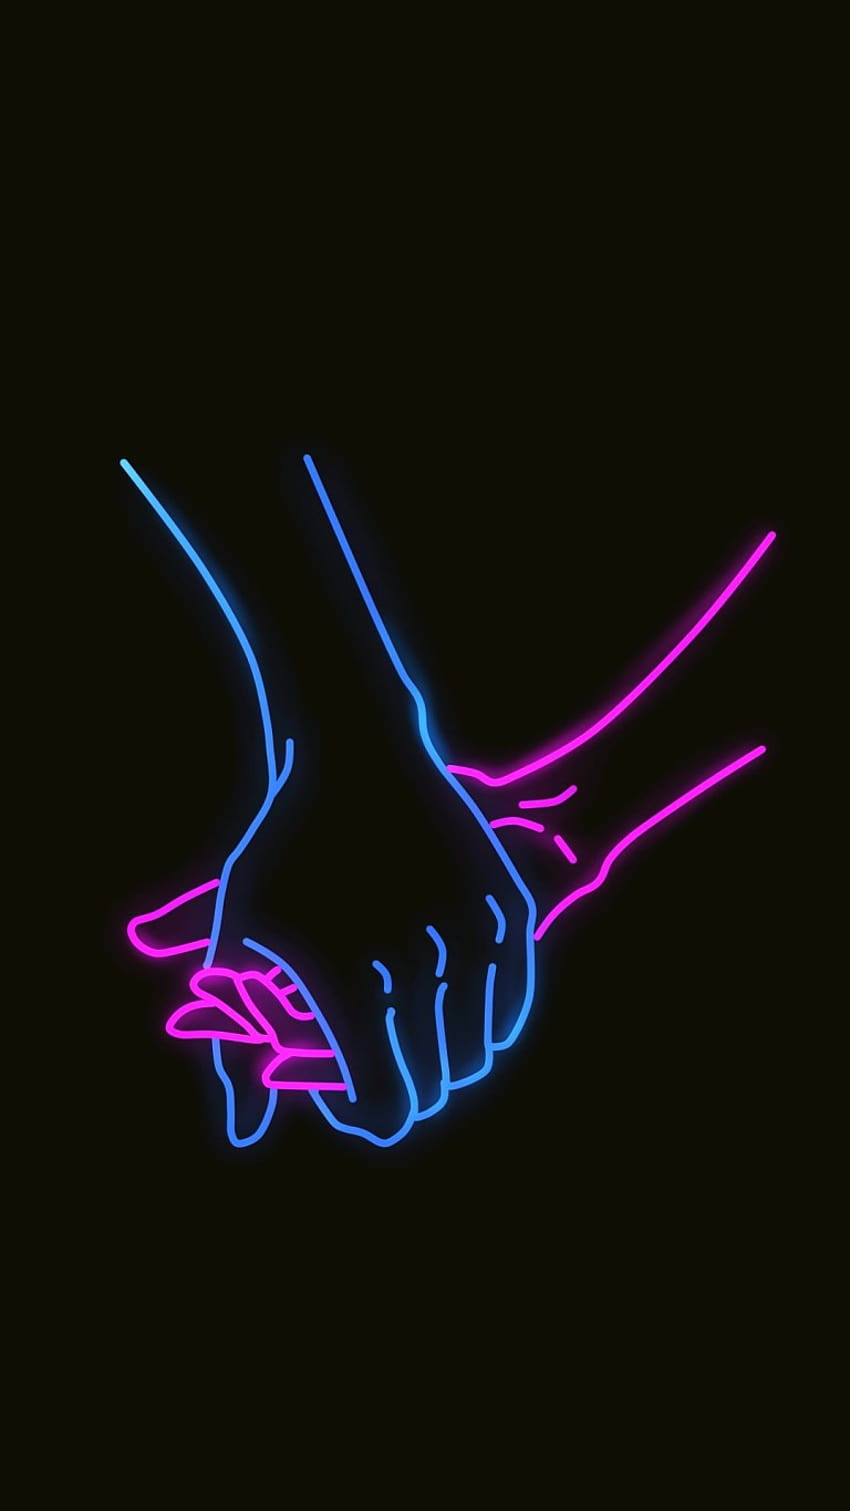 Holding Hands Neon Black Love Android, relaciones negras fondo de pantalla del teléfono